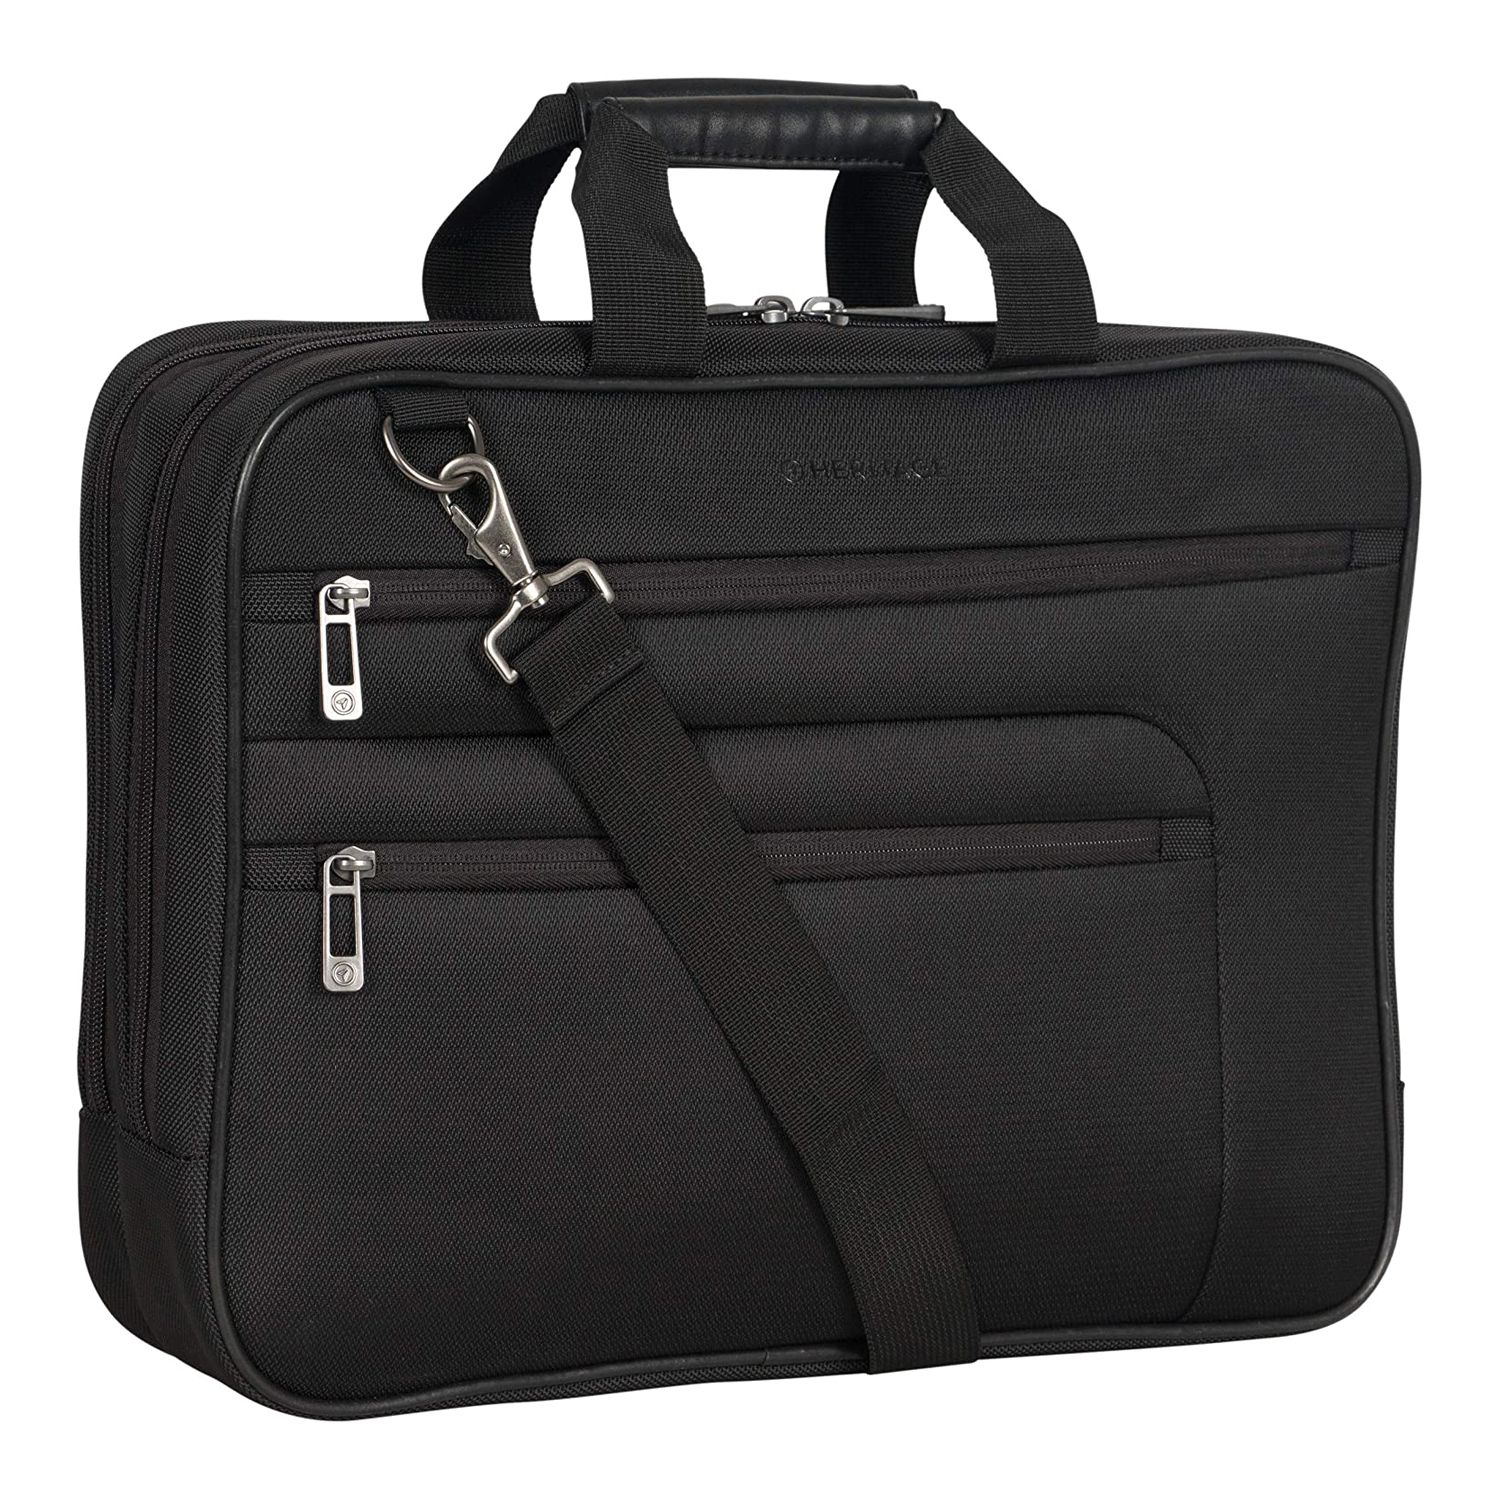 Image for Heritage Laptop Business Case & Tablet Portfolio Bag at Kohl's.